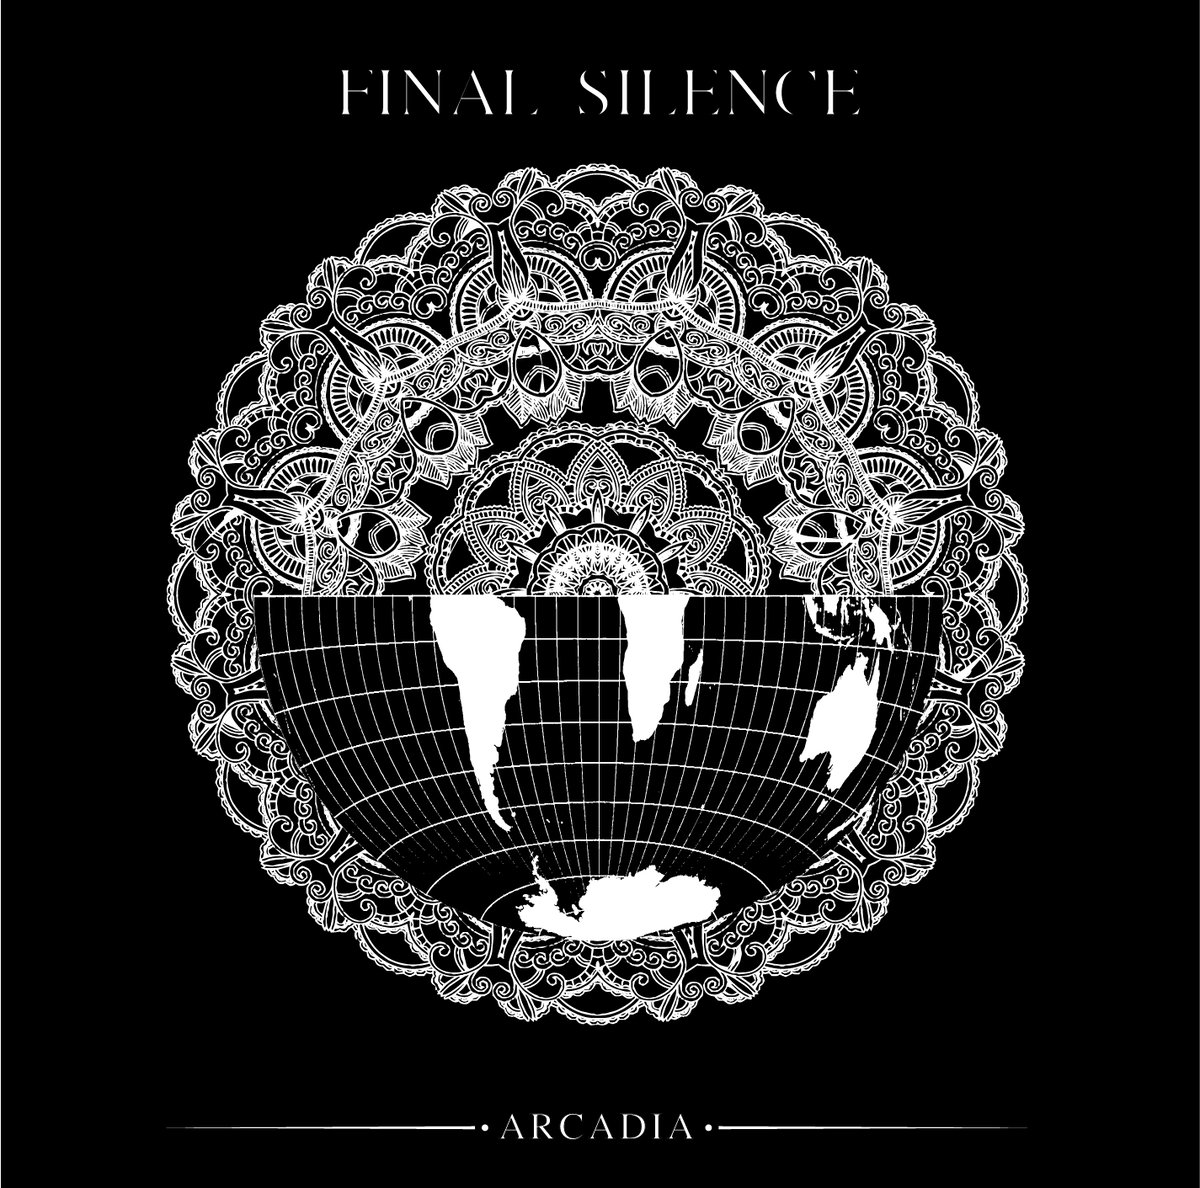 Arcadia альбом. Silence песня. Silence album. The Final Silence.